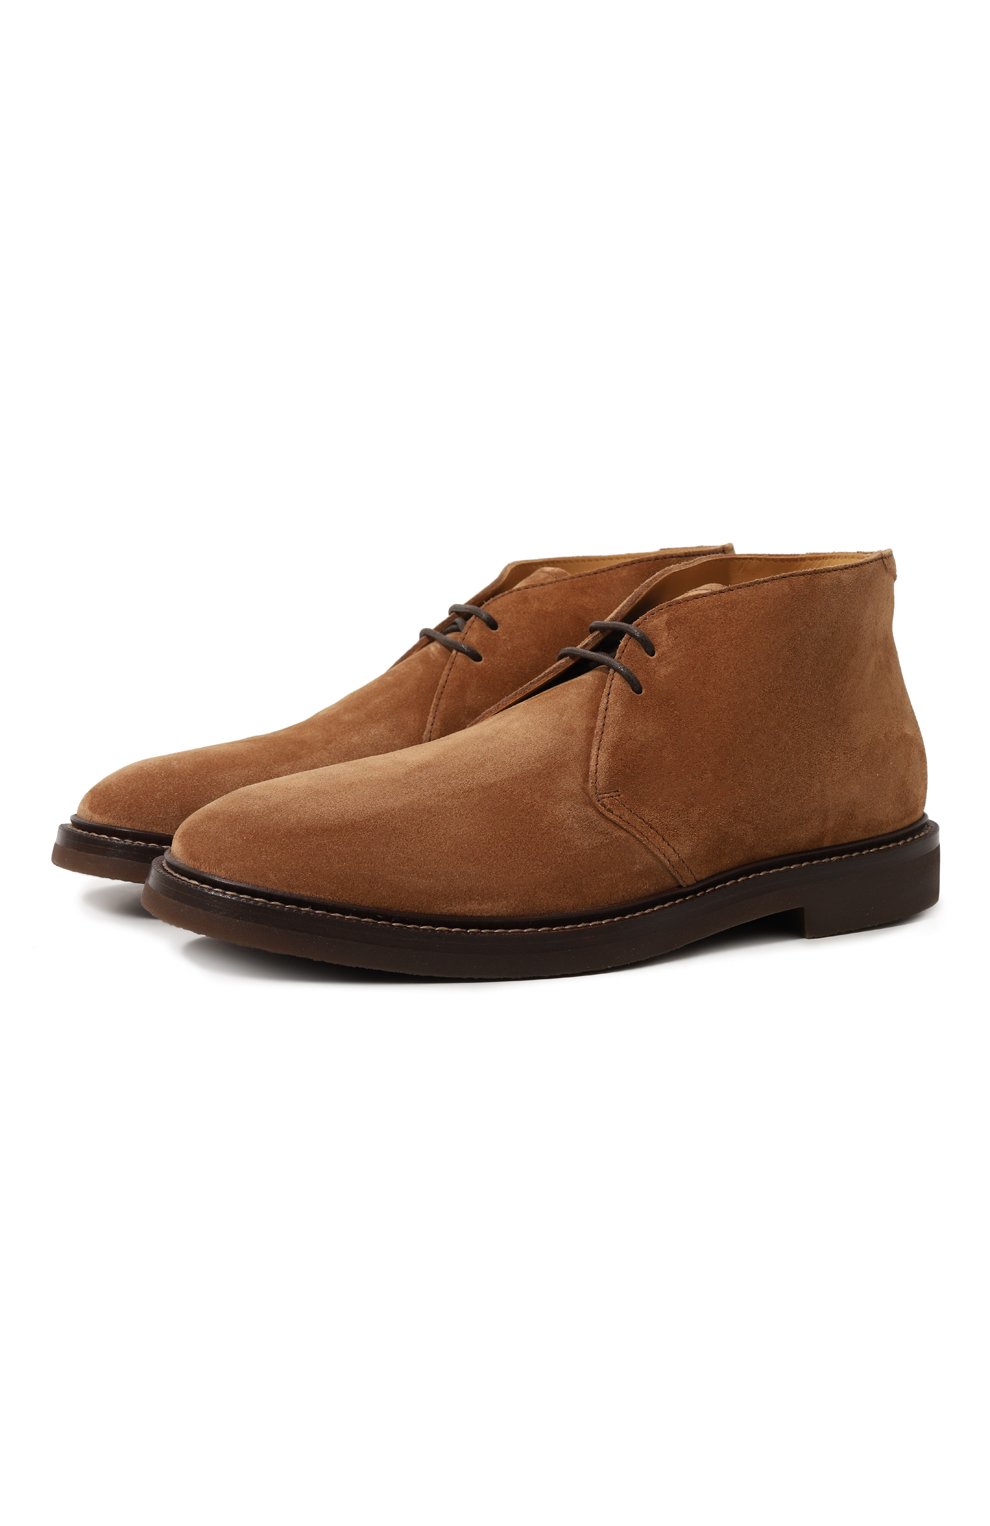 Мужские светло-коричневые замшевые ботинки BRUNELLO CUCINELLI купить в  интернет-магазине ЦУМ, арт. MZUPEB2203